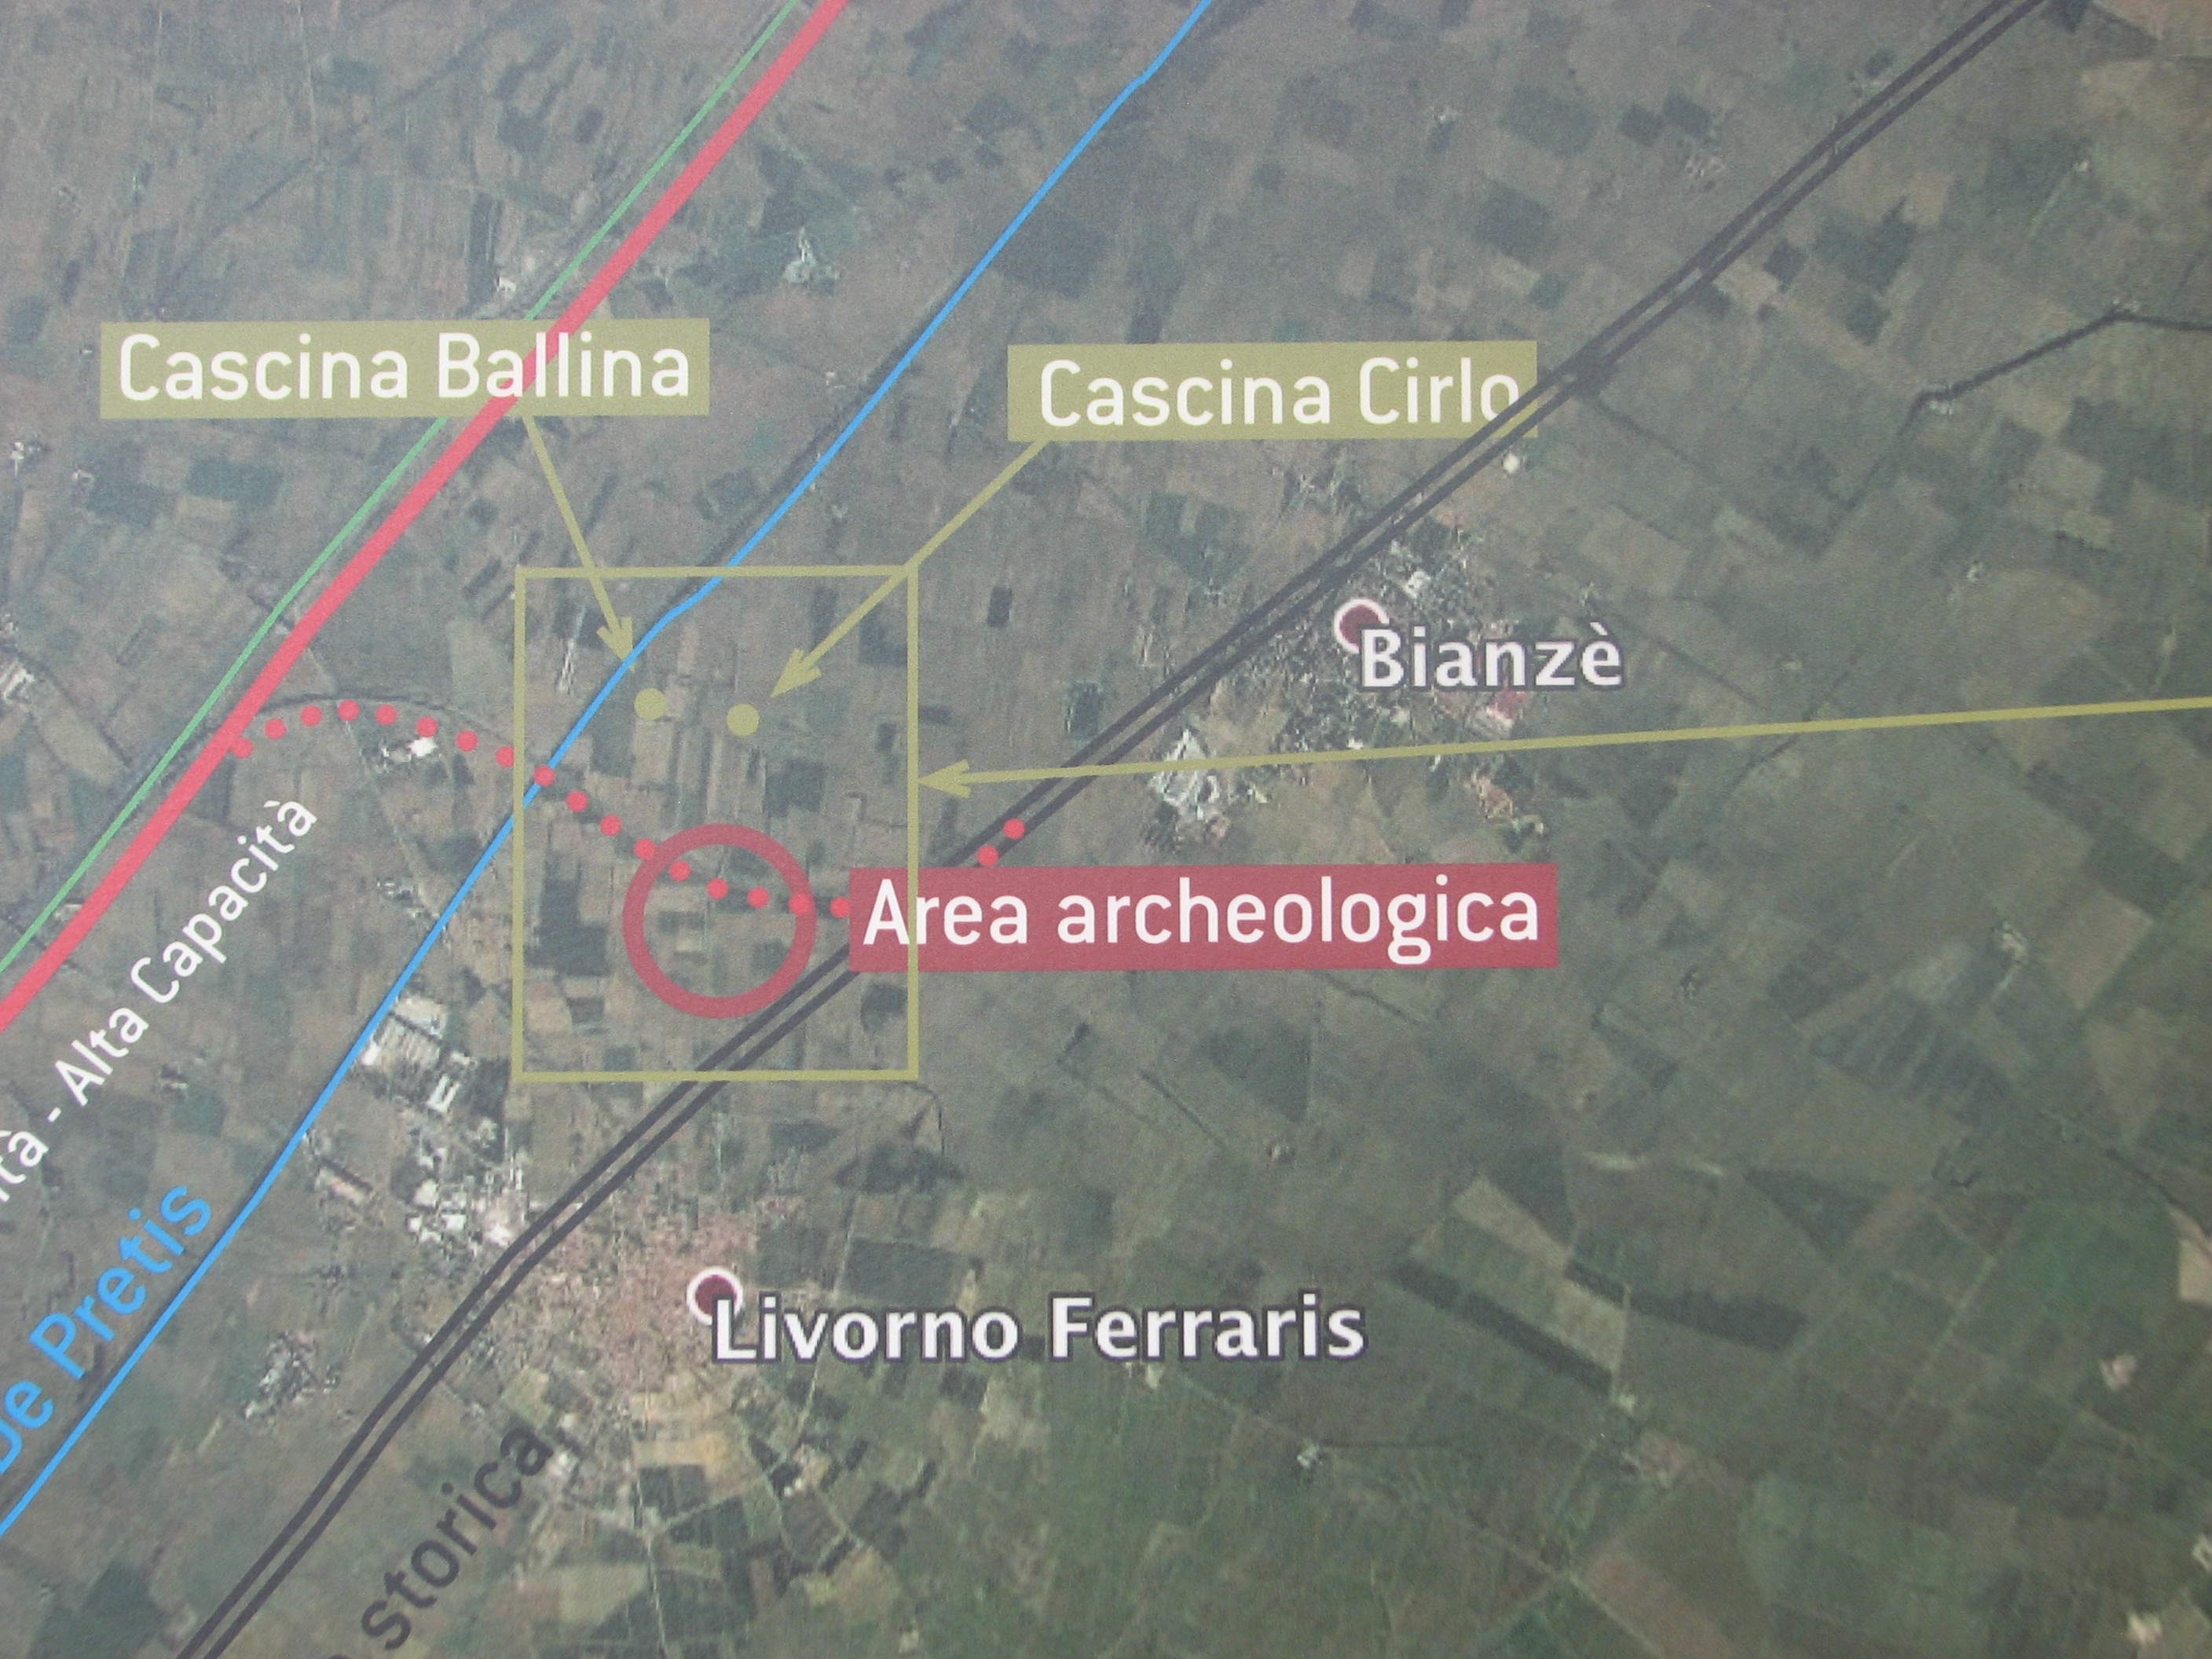 Tra Bianzè e Livorno, nei pressi delle cascine Cirlo e Ballina,  si trova la necropoli romana